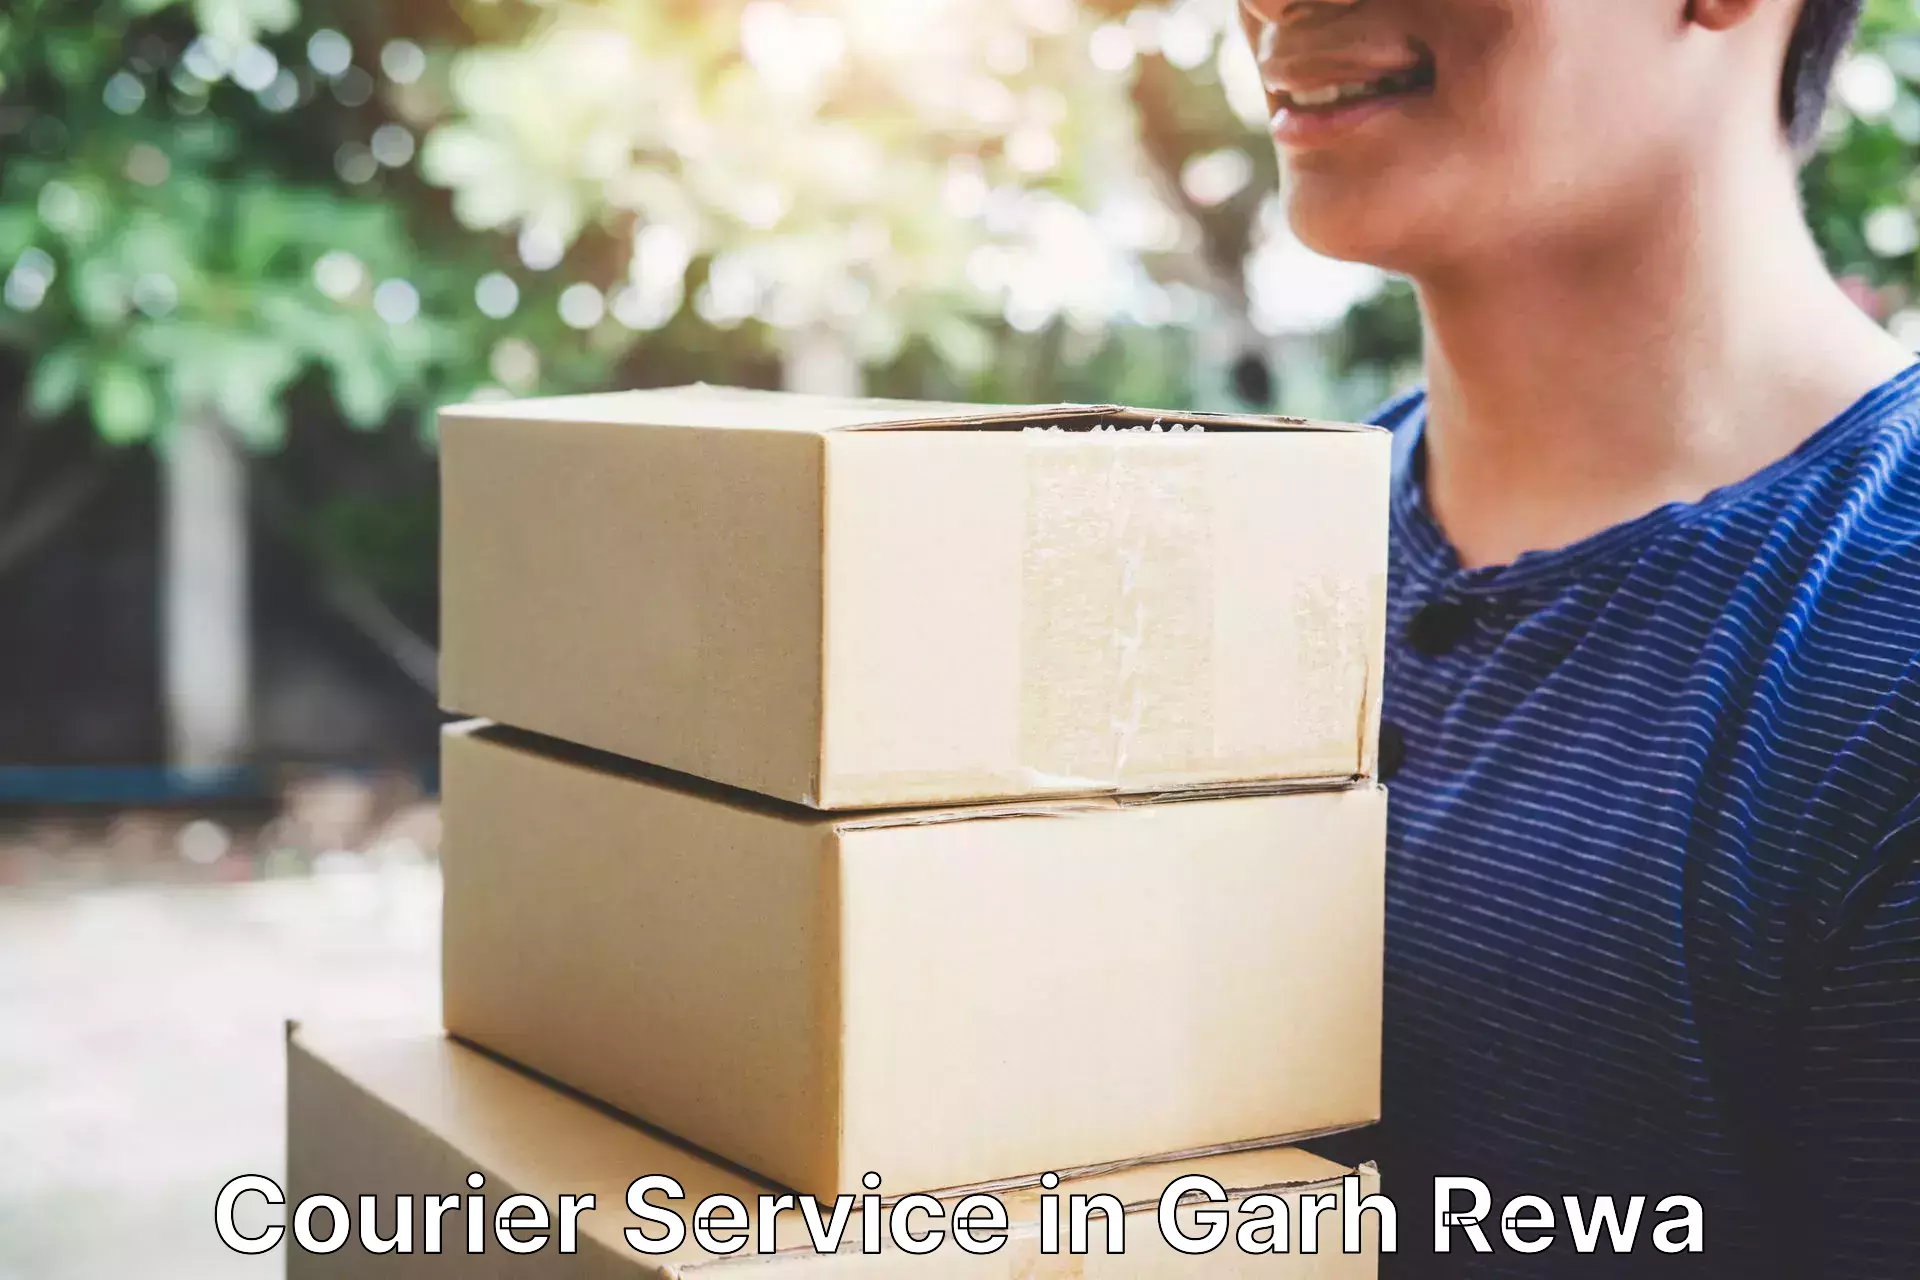 Customer-friendly courier services in Garh Rewa